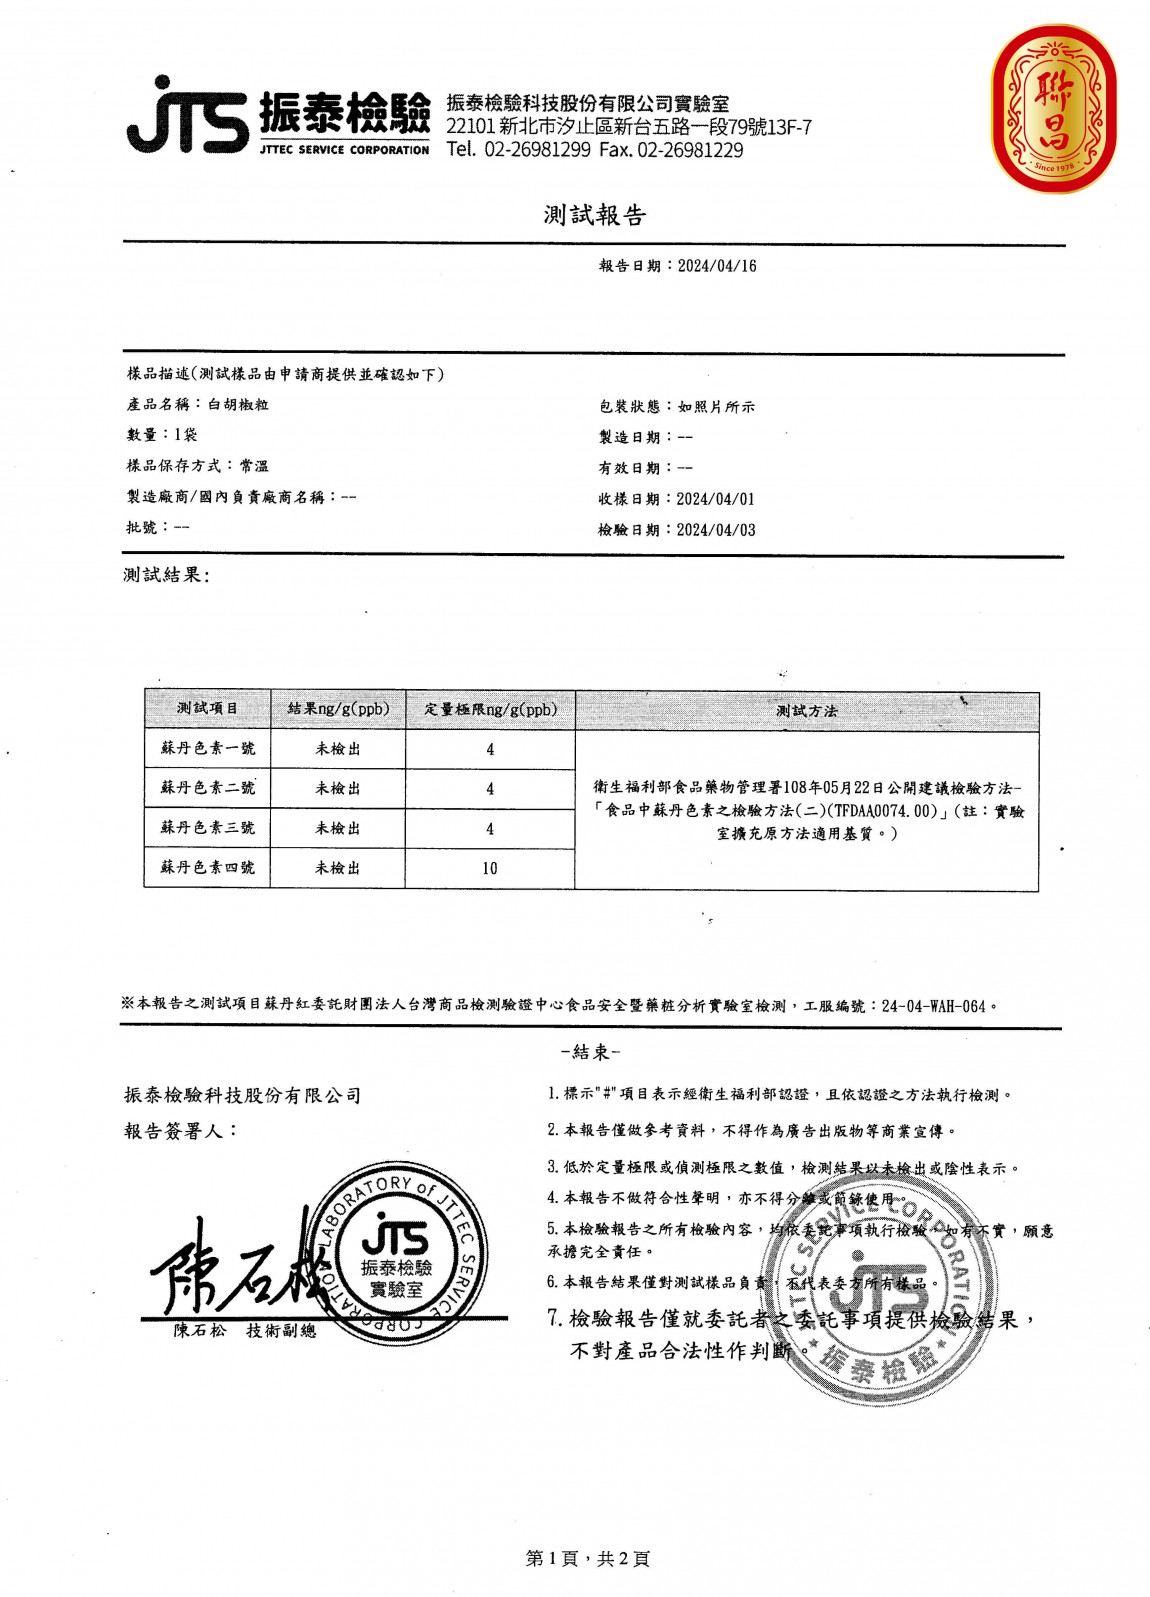 英喬-白胡椒粒檢驗報告_logo (1)